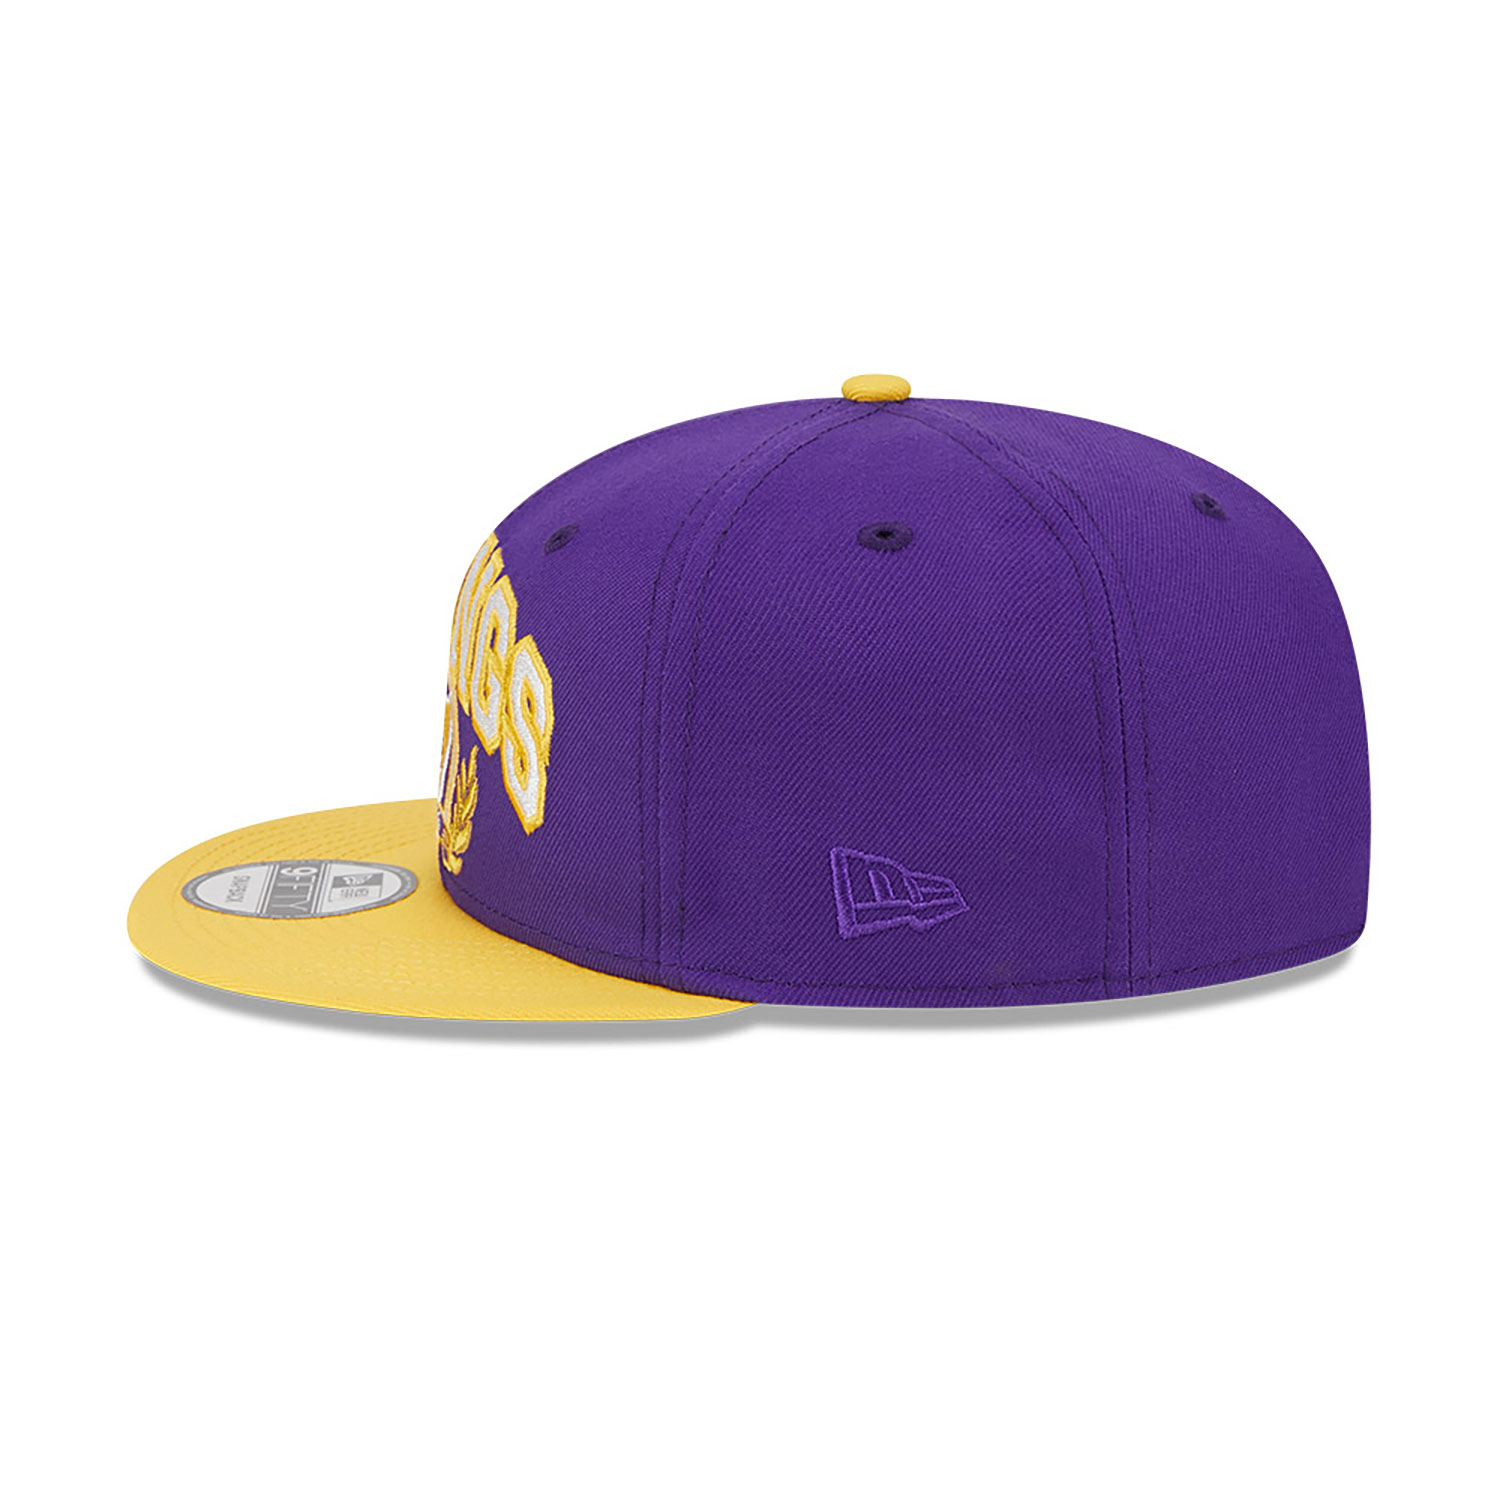 Minnesota Vikings NFL Team Purple 9FIFTY Snapback Cap